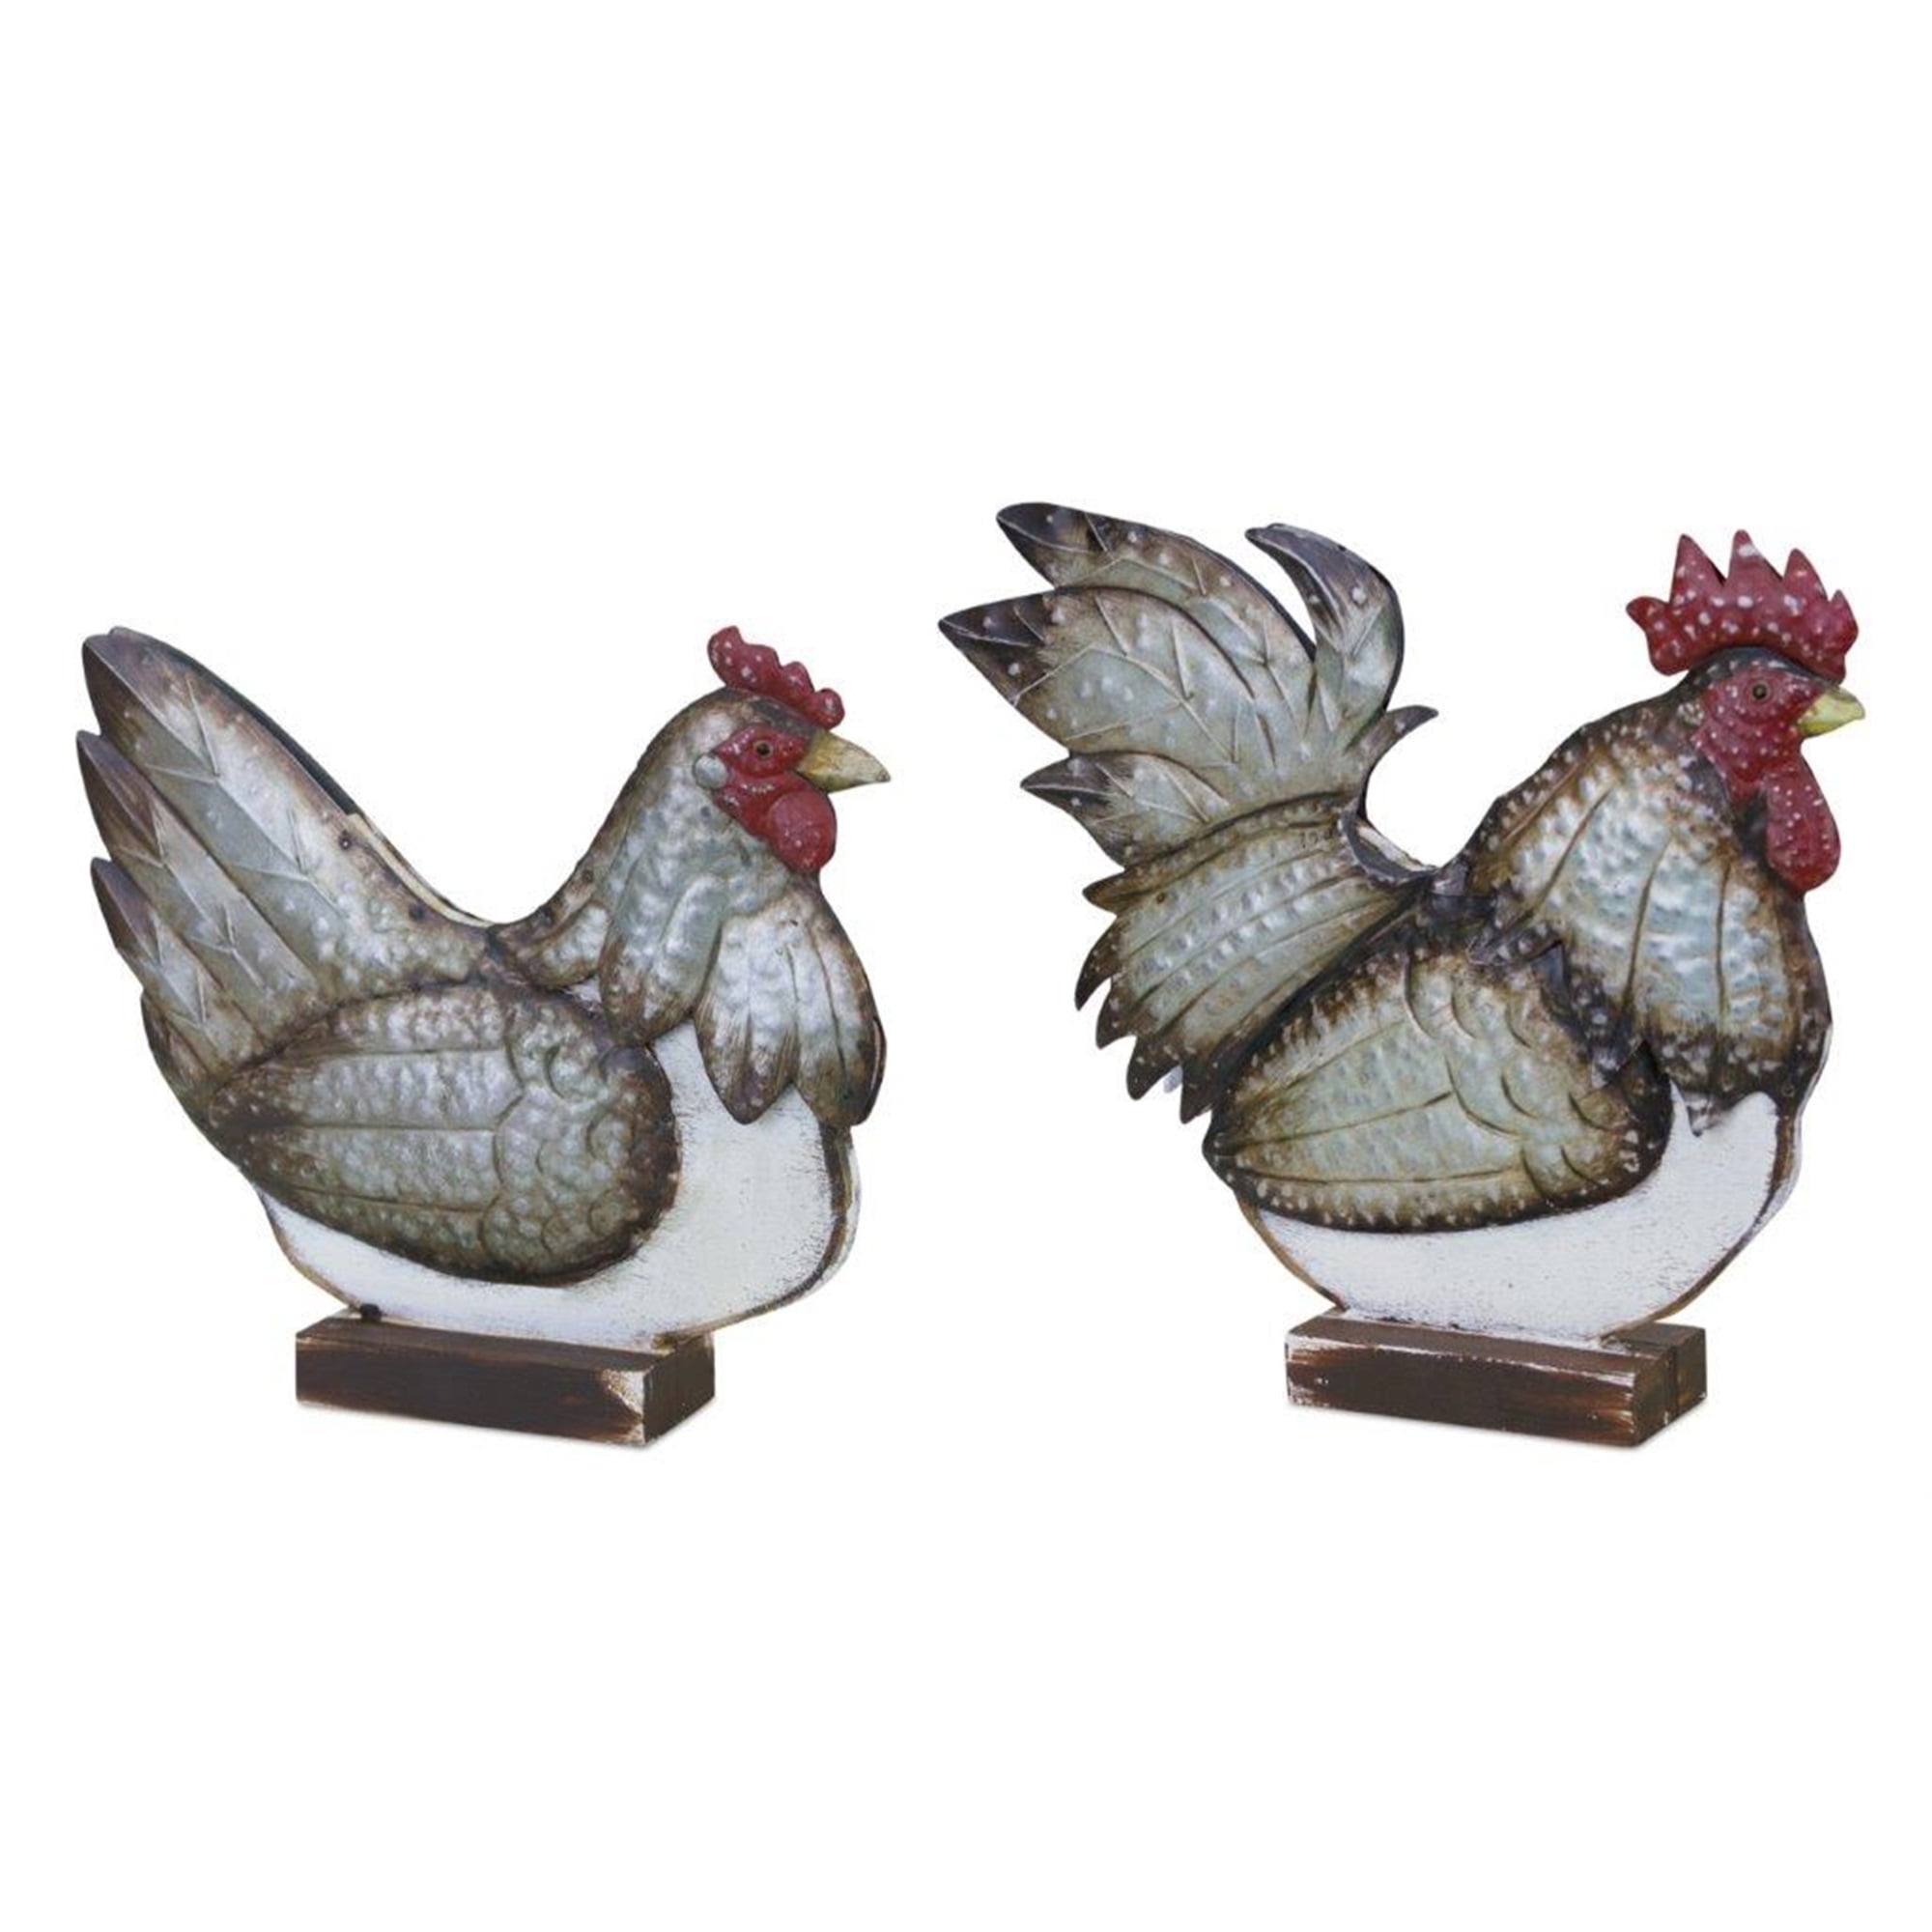 Chicken on Stand (Set of 2) 10.5"L x 9.25"H, 12.5"L x 11.25"H Wood/Metal